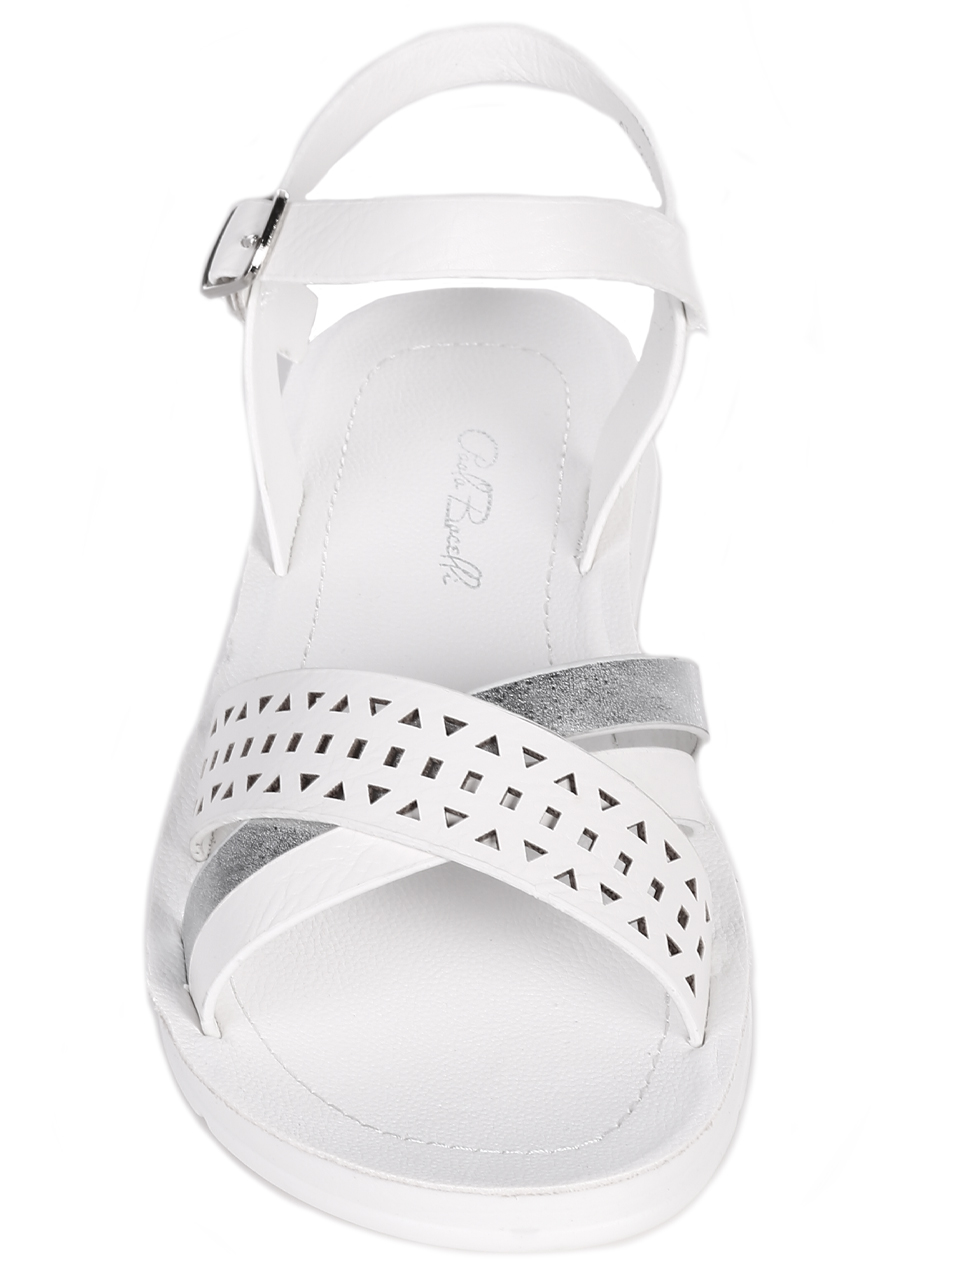 Ежедневни дамски равни сандали в бяло 4F-23260 white